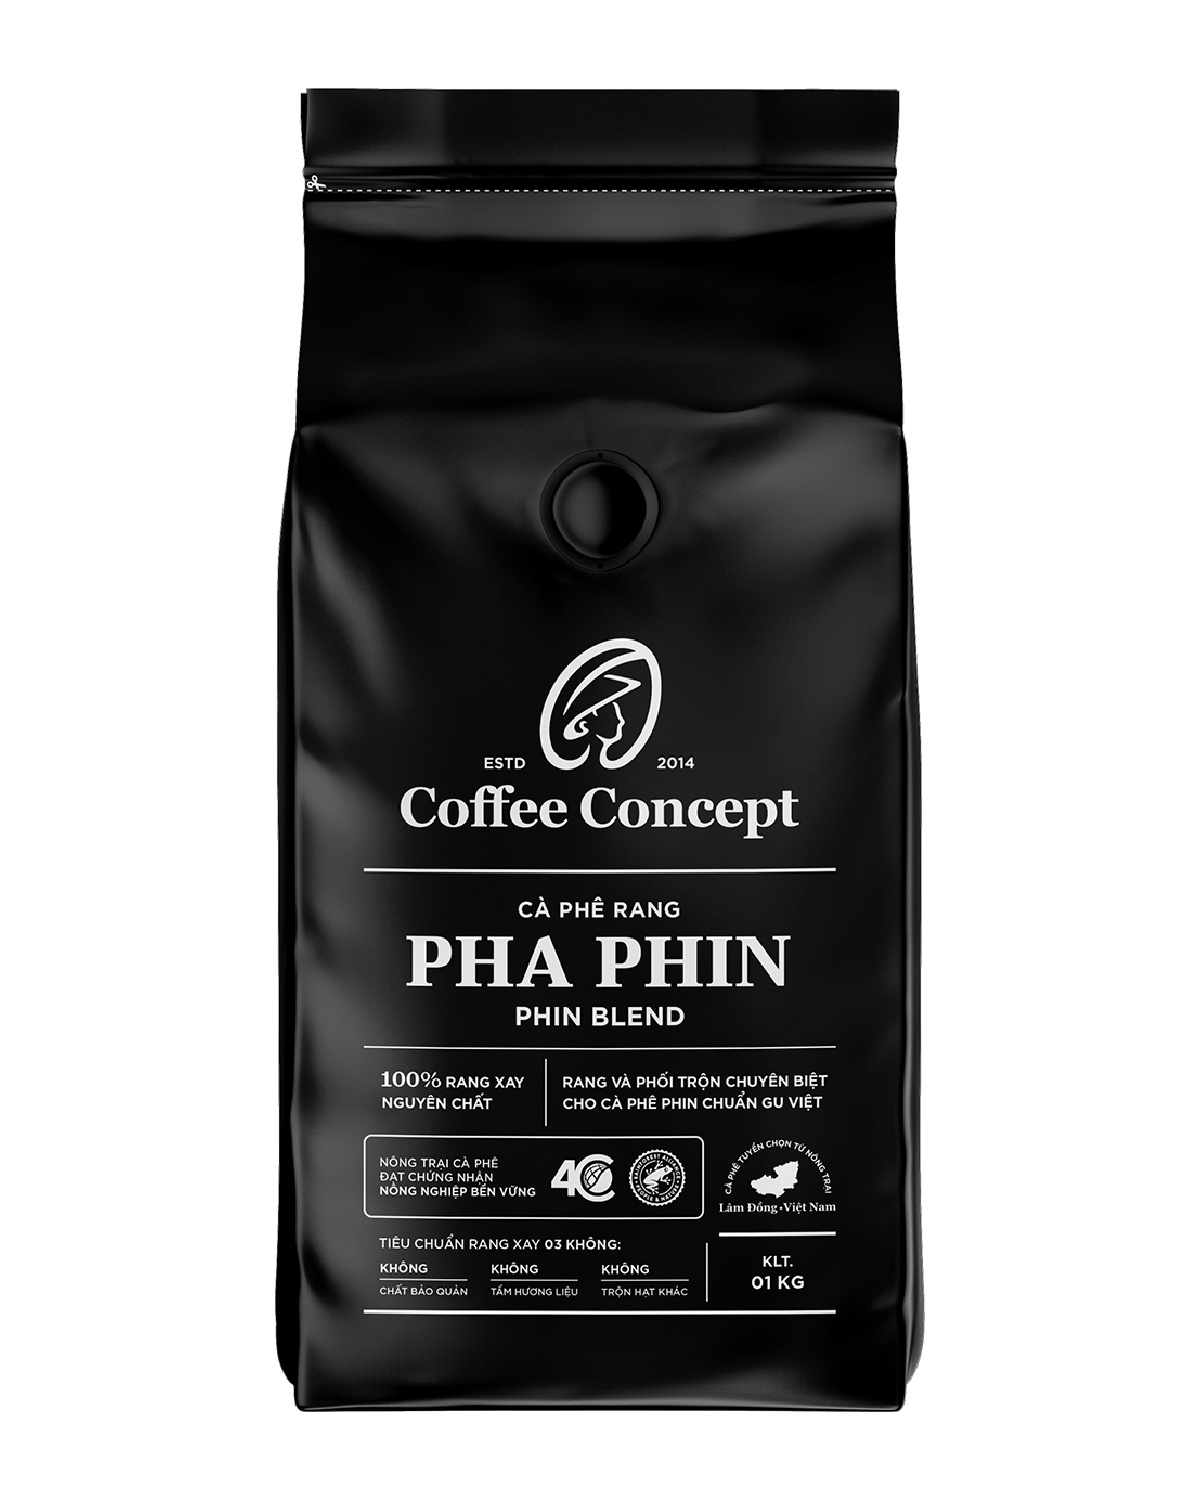  Cà phê rang PHA PHIN gói 1000G (dùng cho kinh doanh) - Thùng 12 gói 